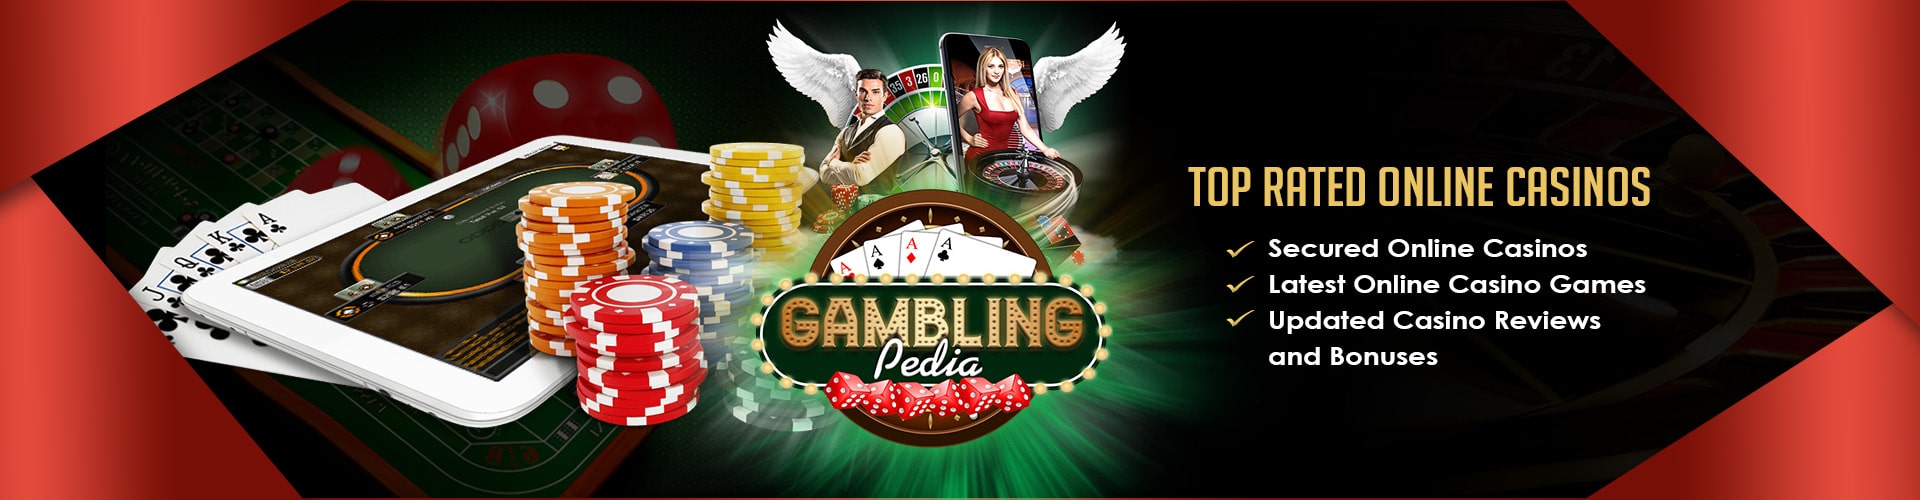 Online casino bonus games